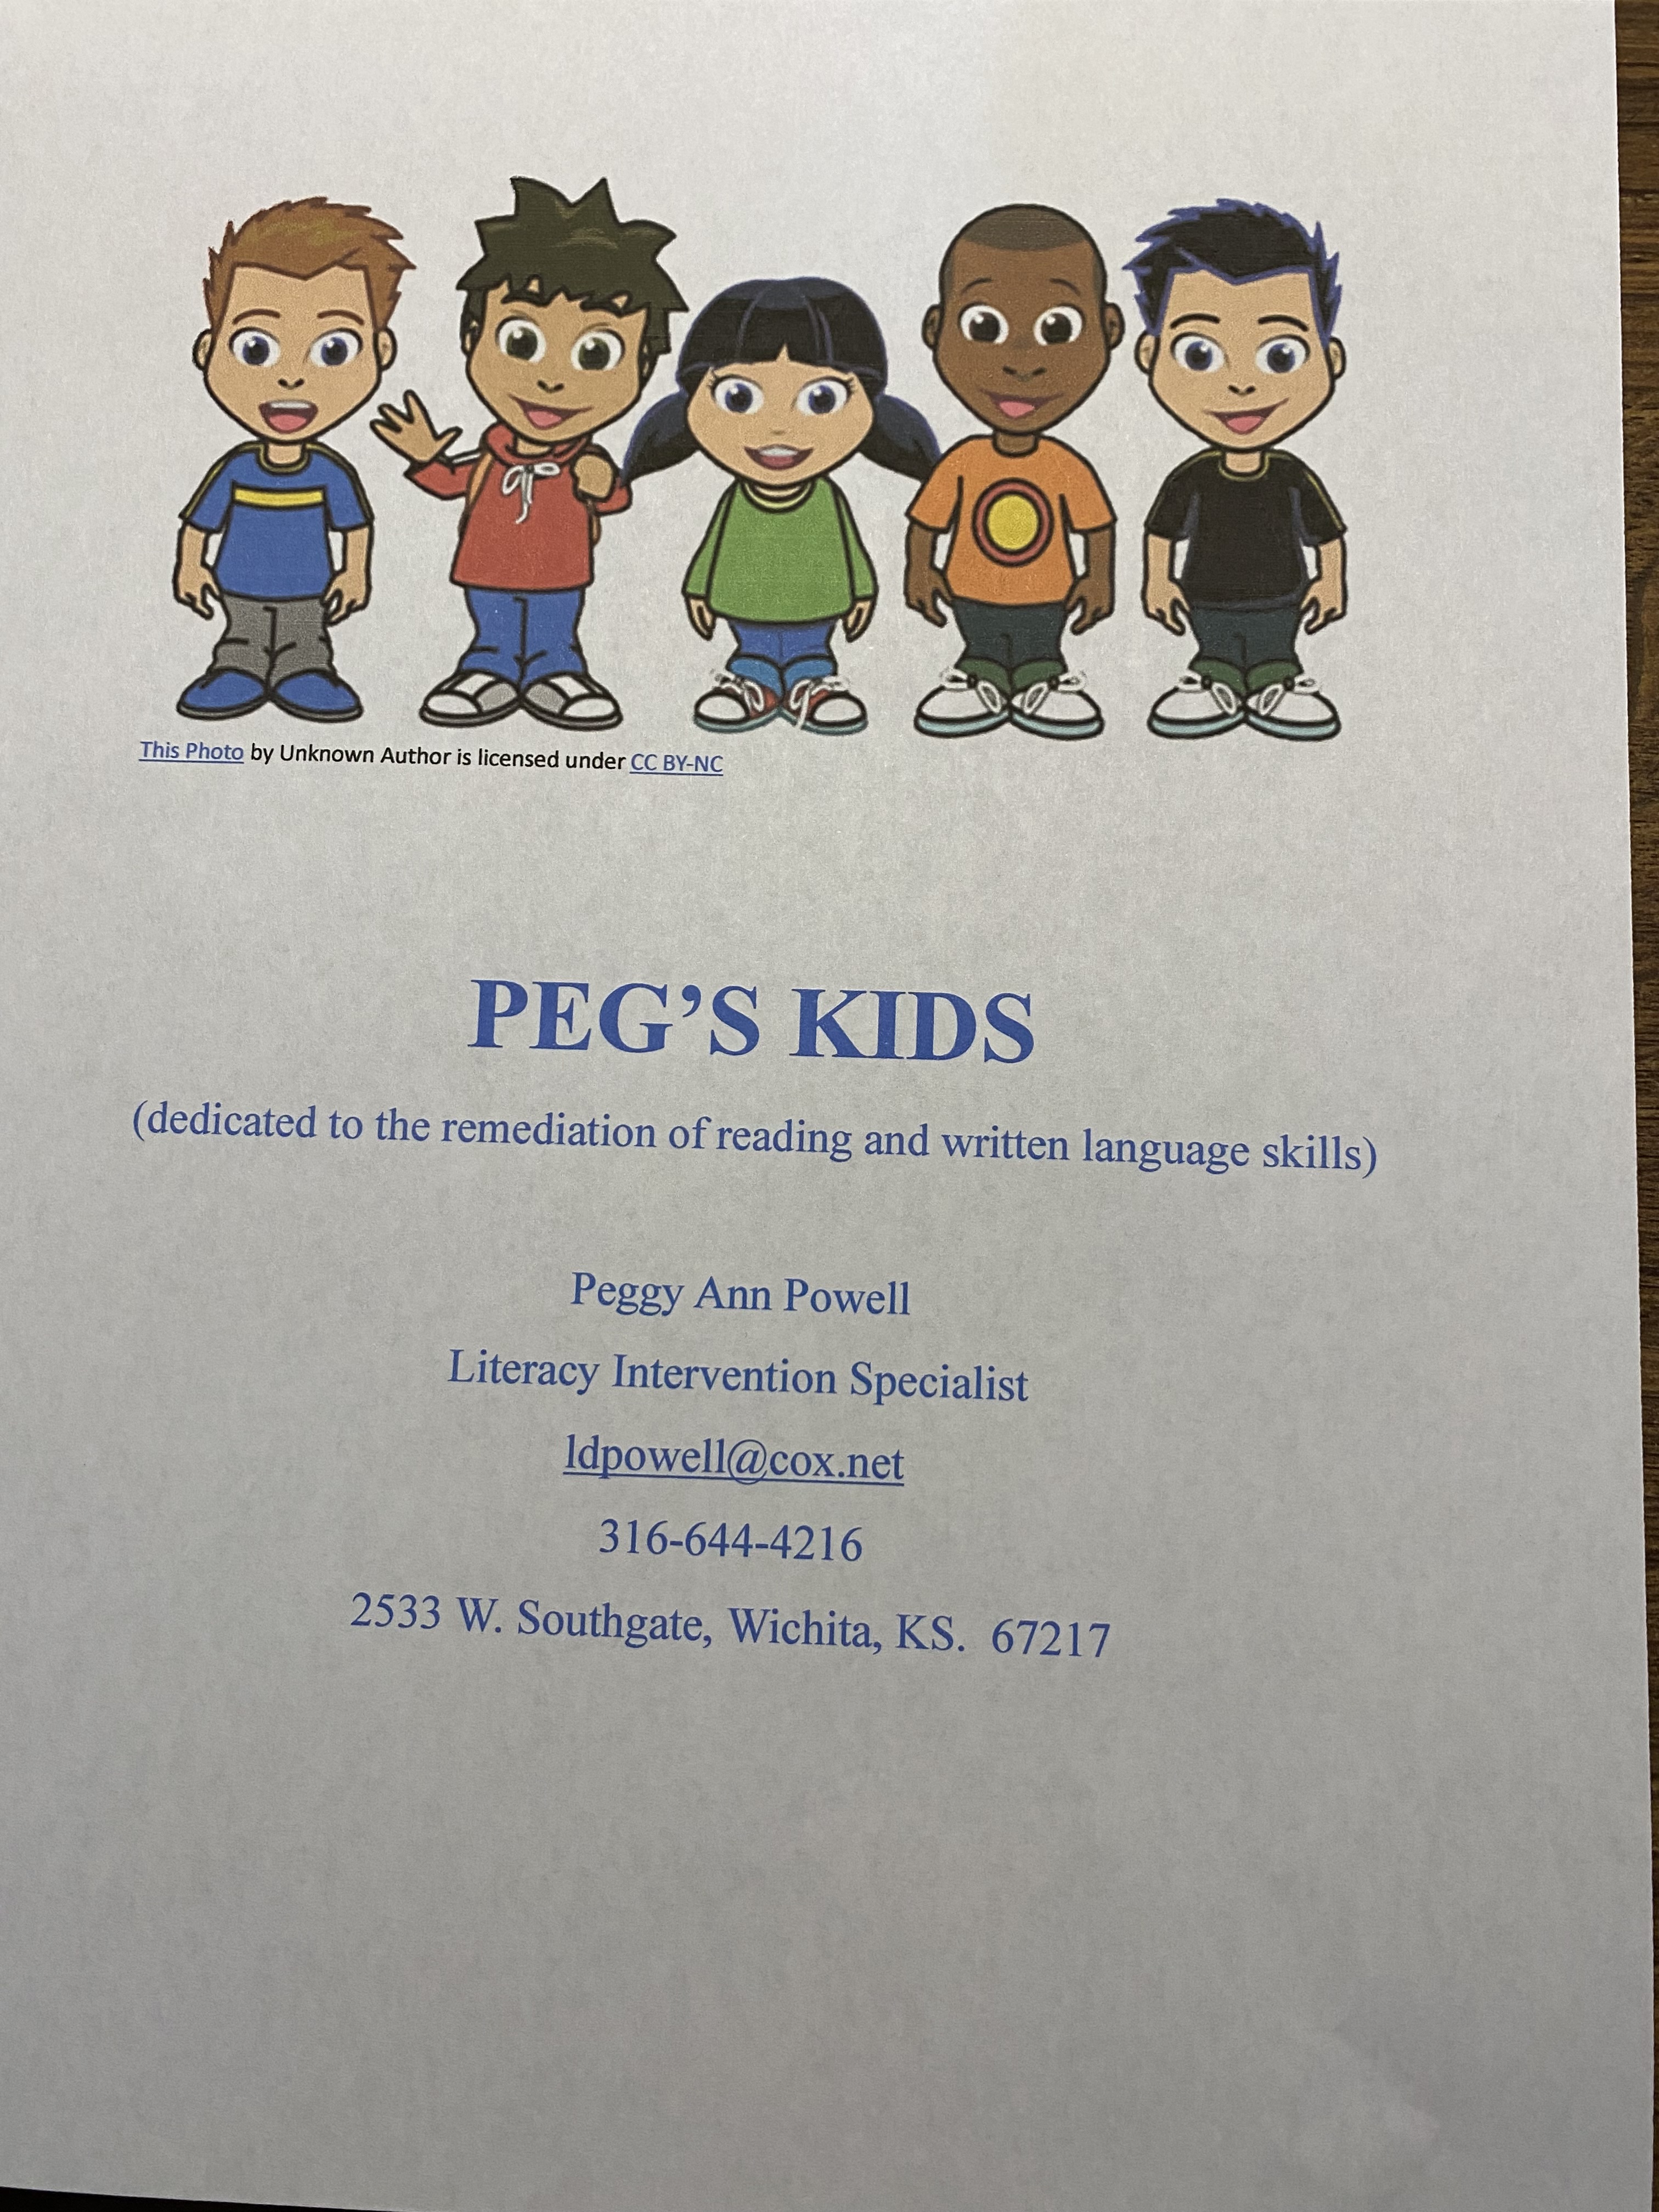 Peg's Kids logo